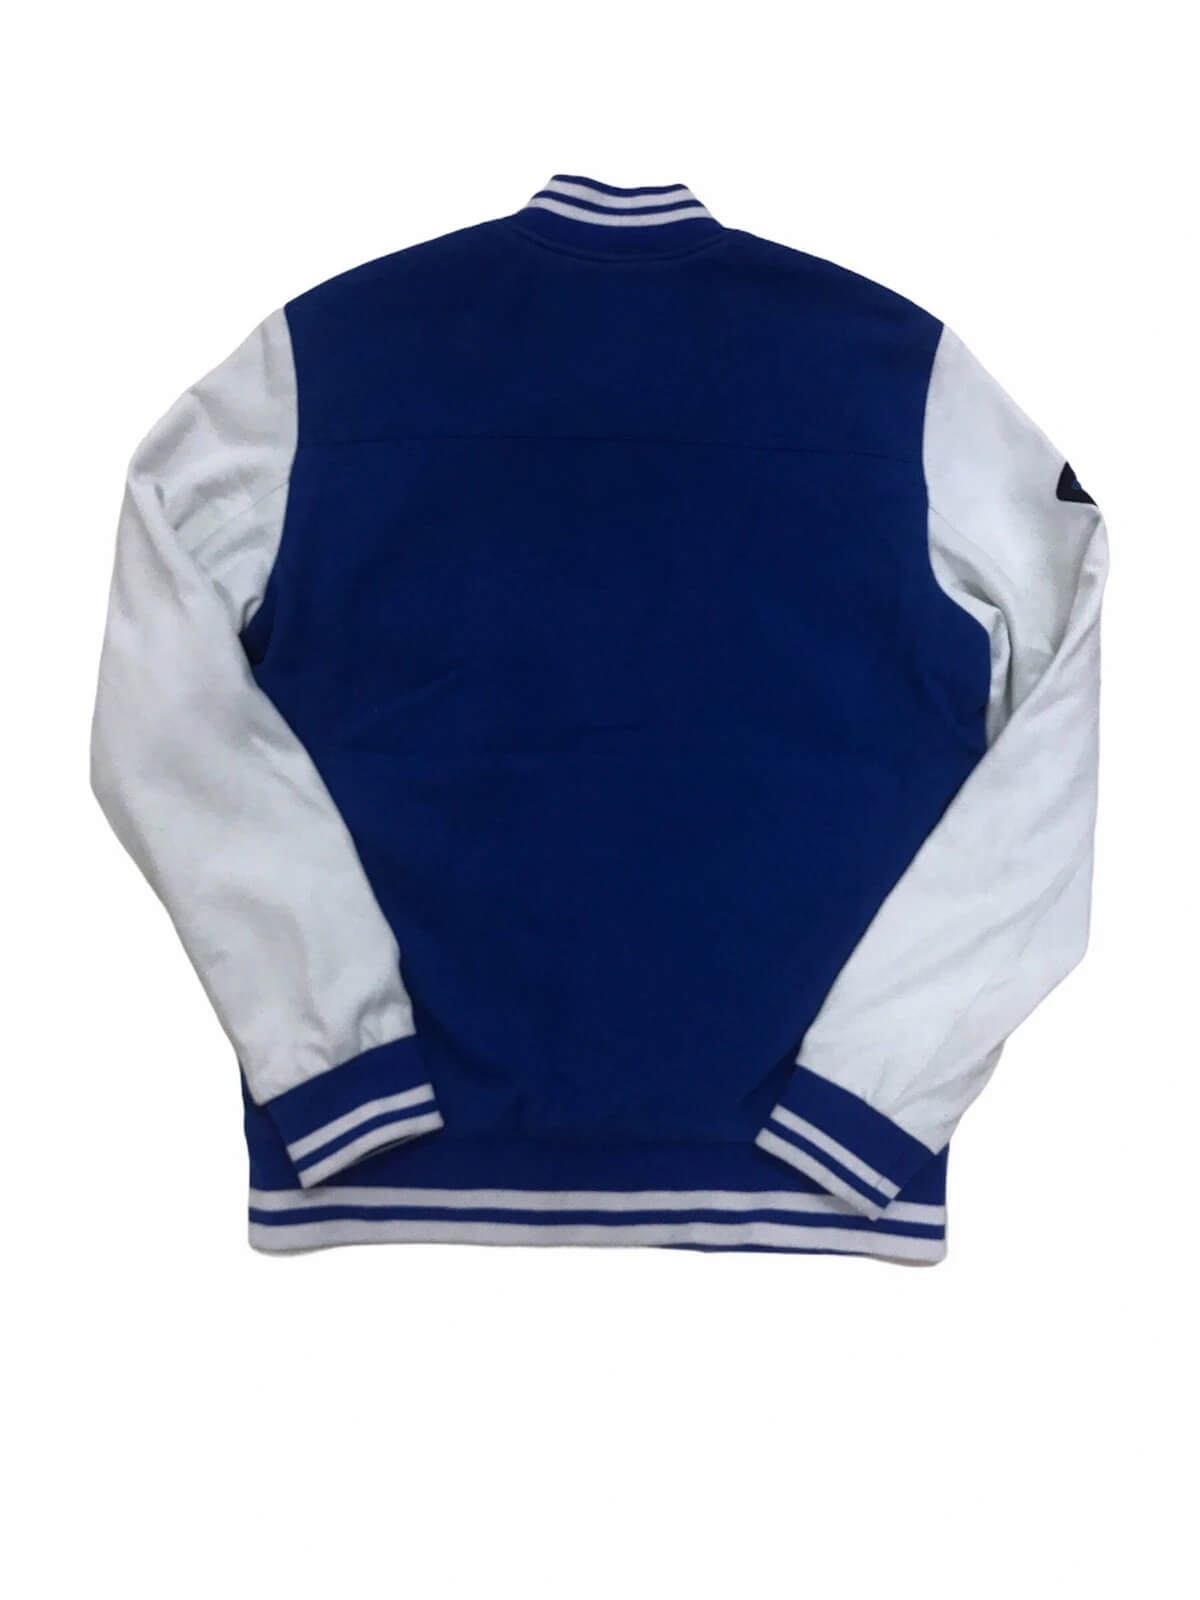 Vintage🔥 LA Dodgers Los Angeles Letterman Wool Leather Jacket